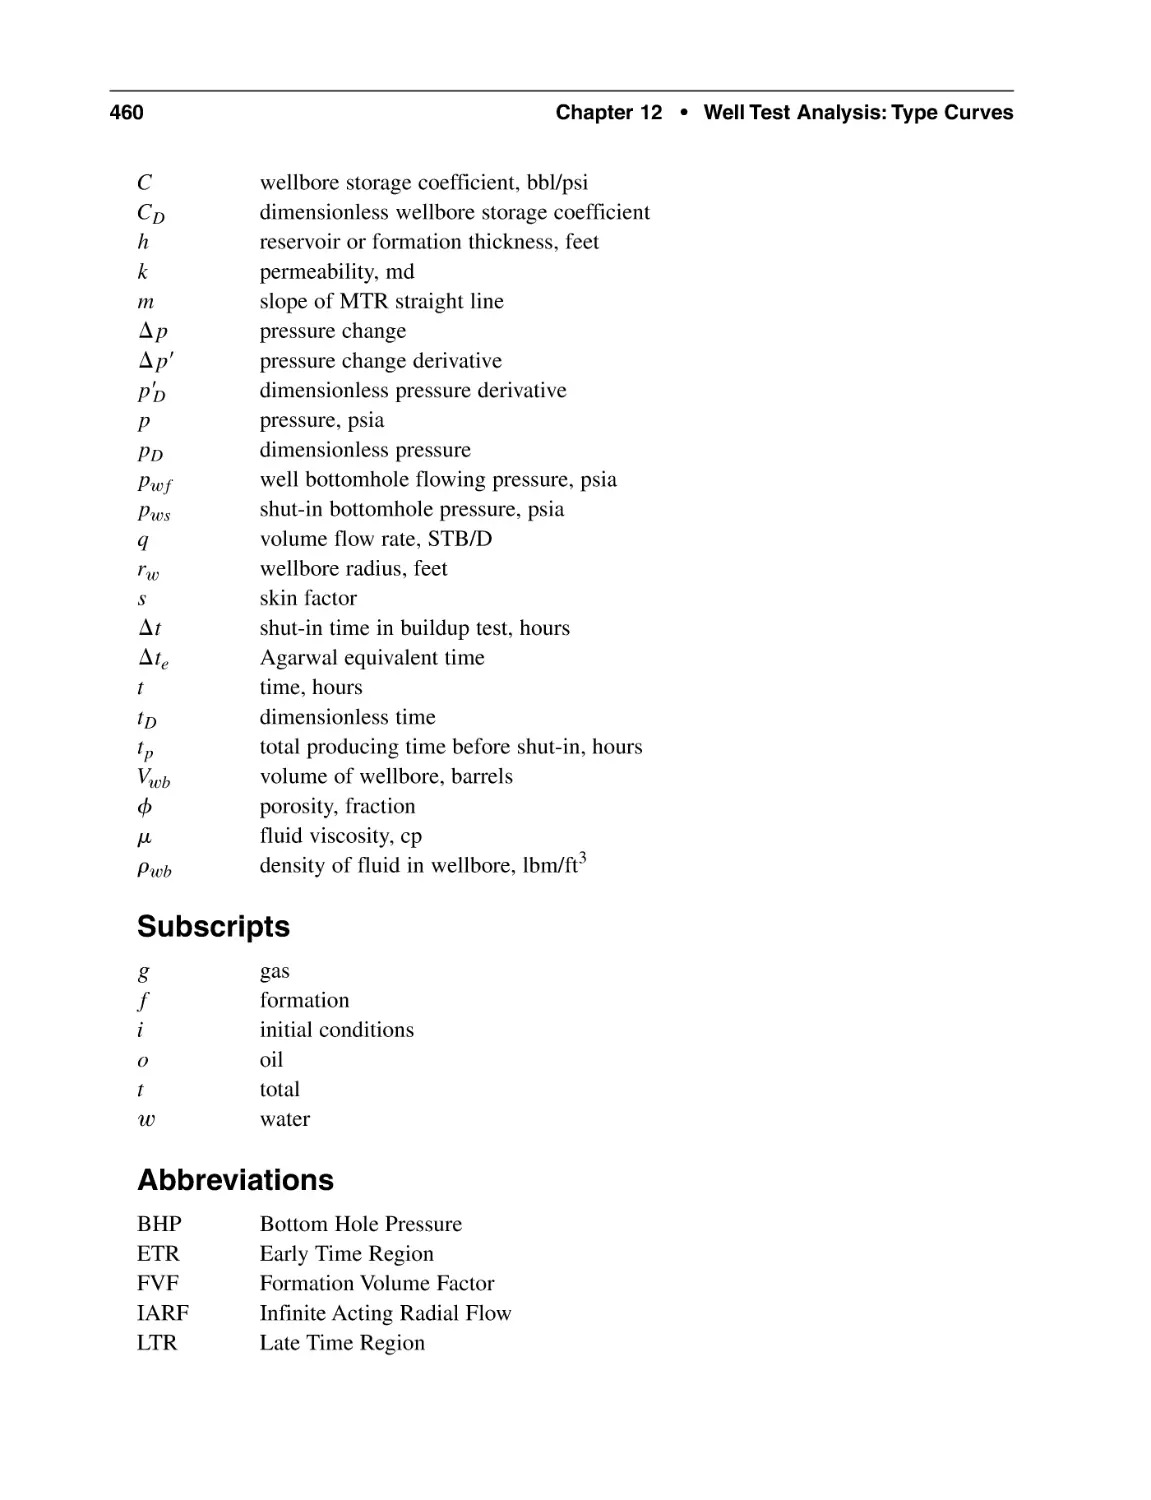 Subscripts
Abbreviations